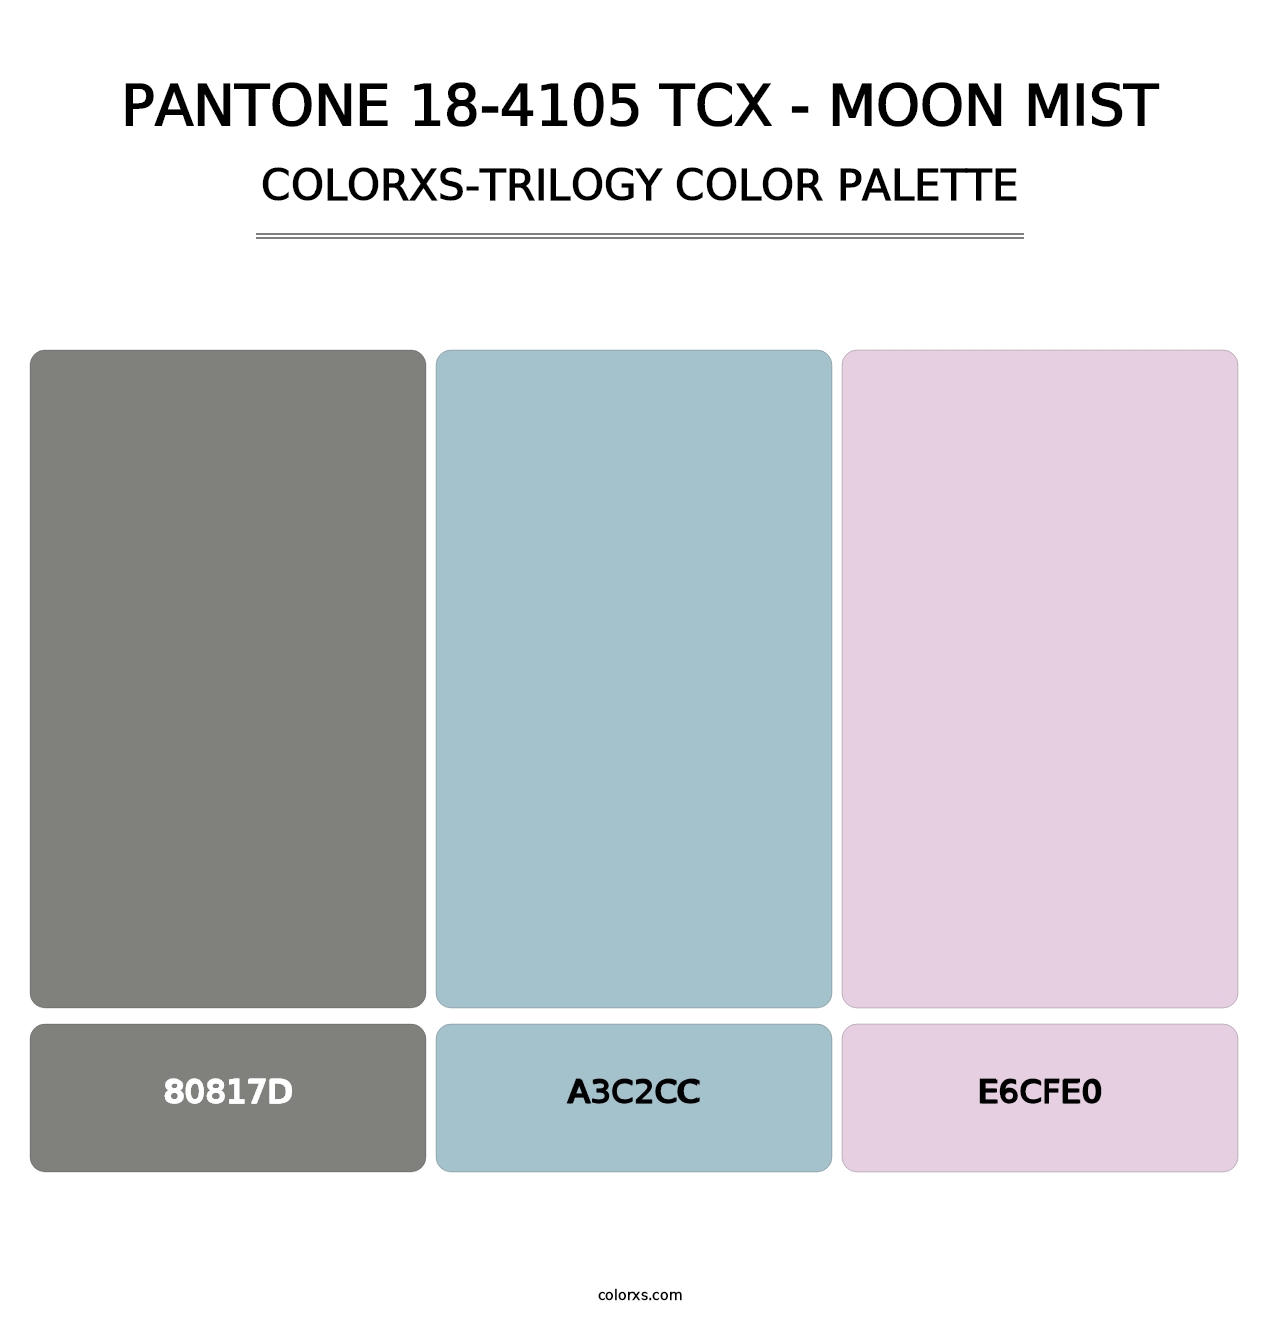 PANTONE 18-4105 TCX - Moon Mist - Colorxs Trilogy Palette